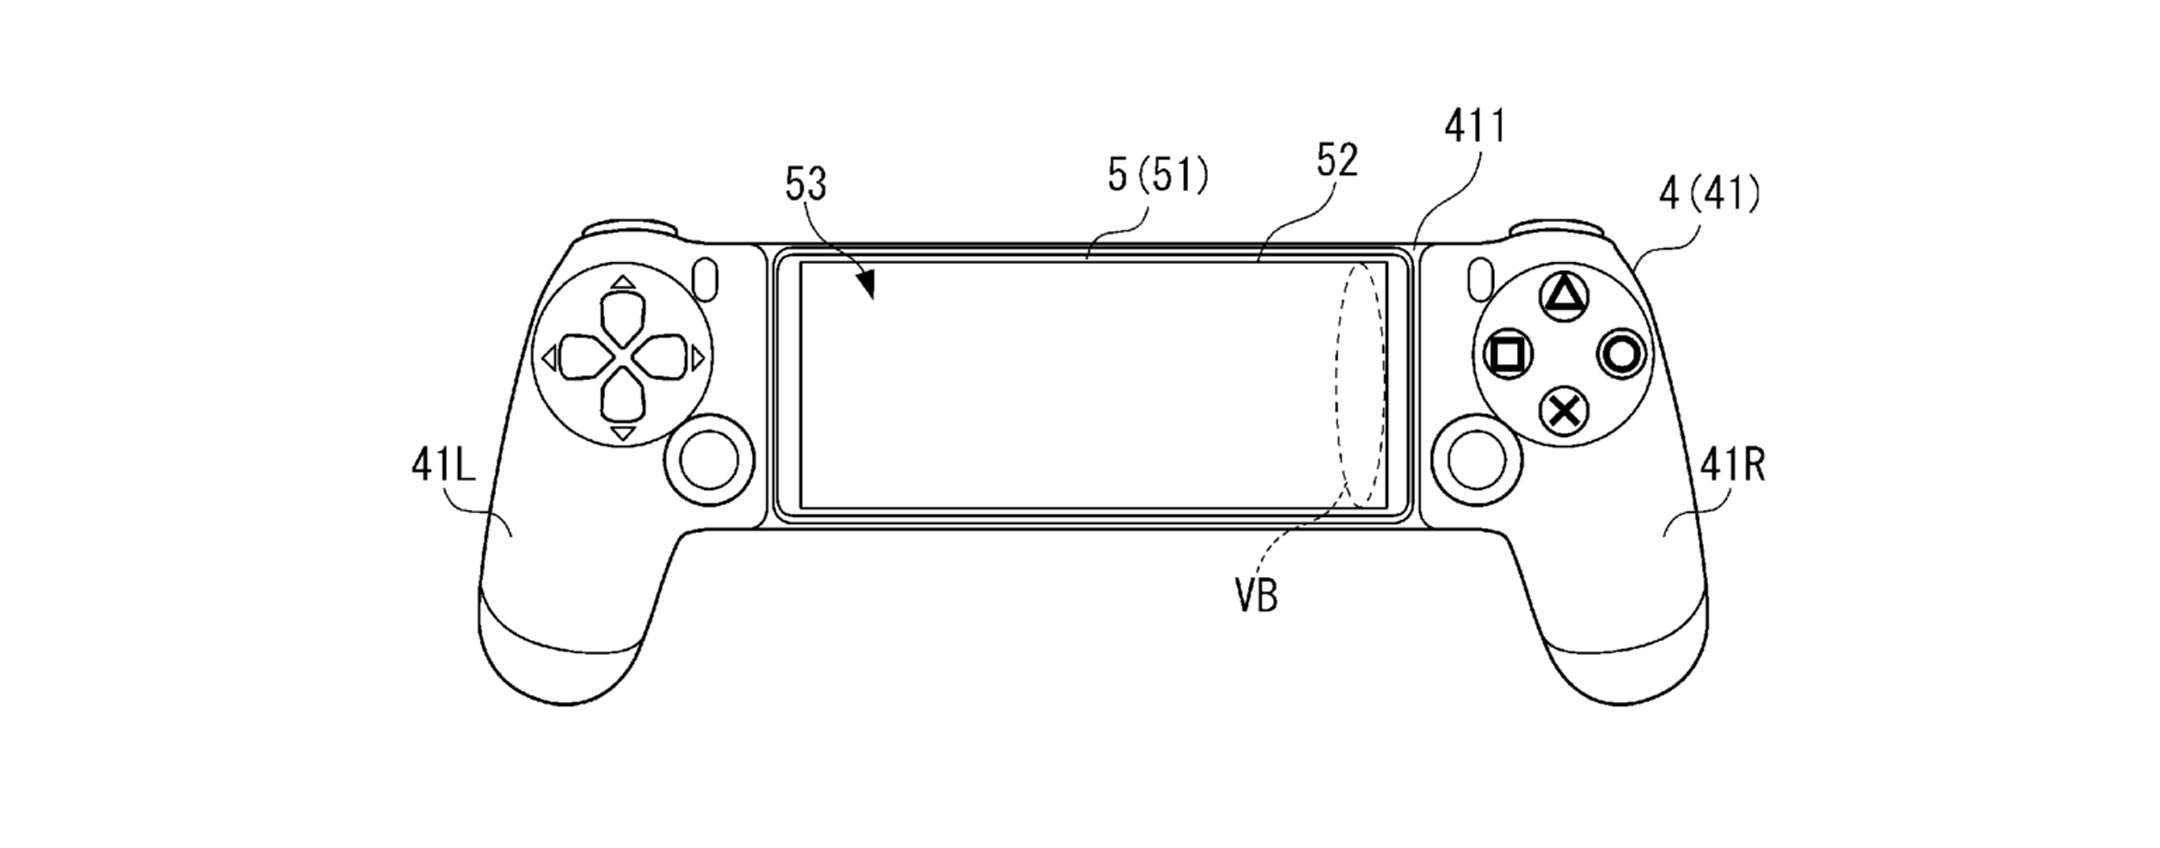 Sony: un brevetto immagina il DualShock per il gaming su mobile